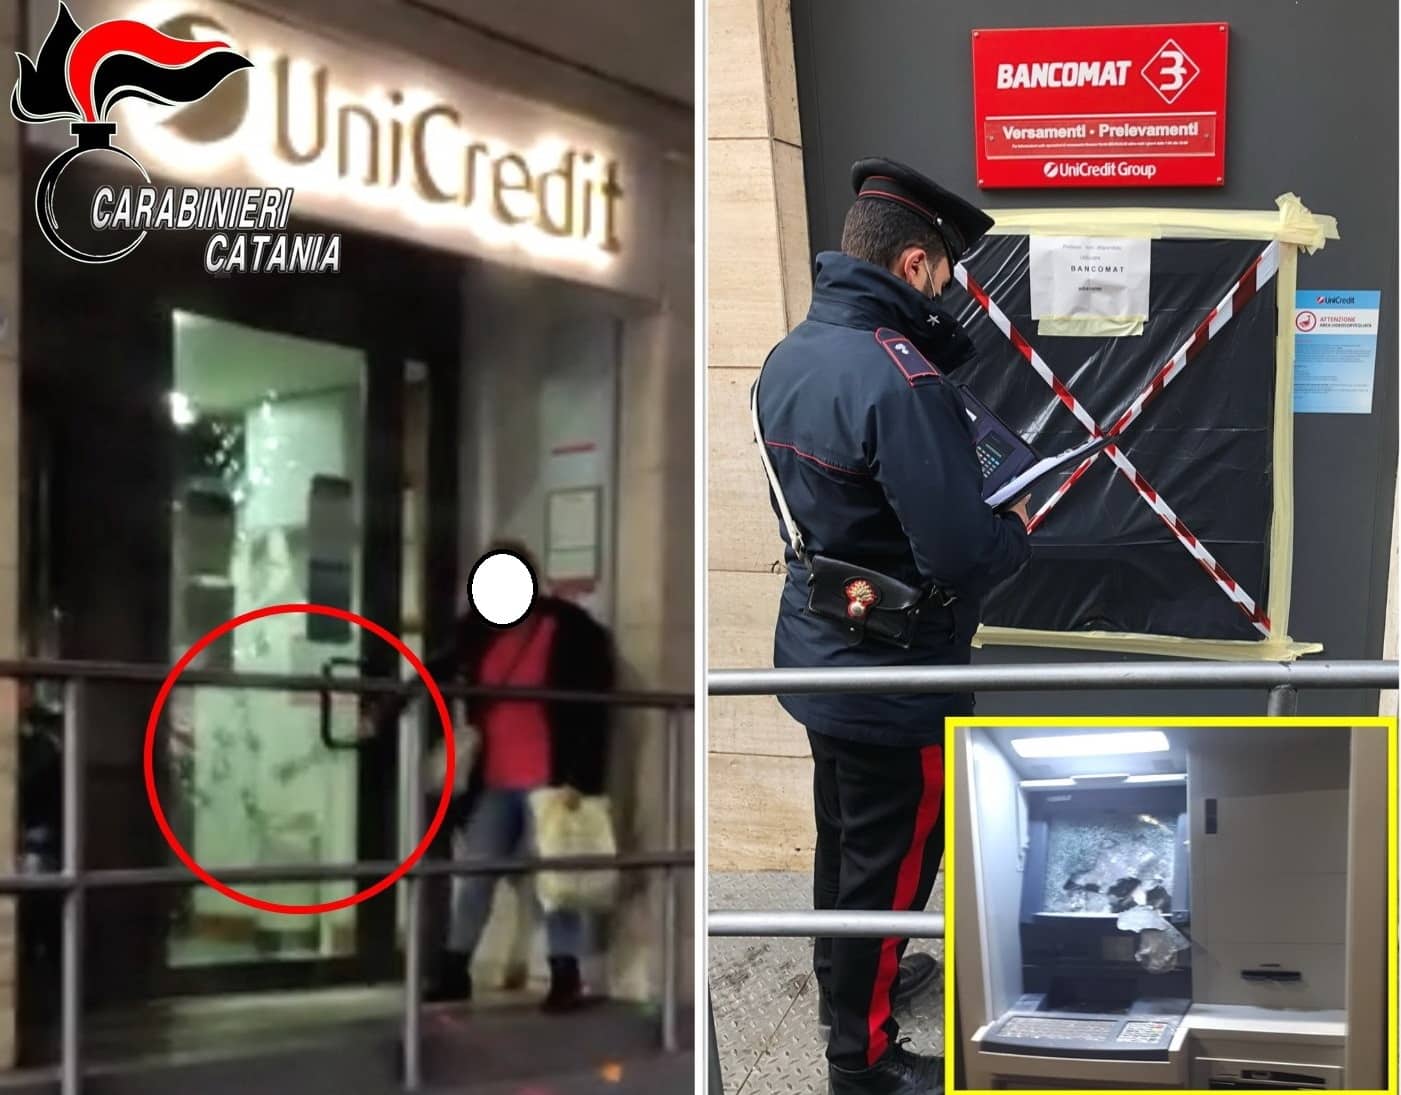 Scene da film nel Catanese, donna spacca vetrata Unicredit a colpi di martello: “disarmata” e arrestata